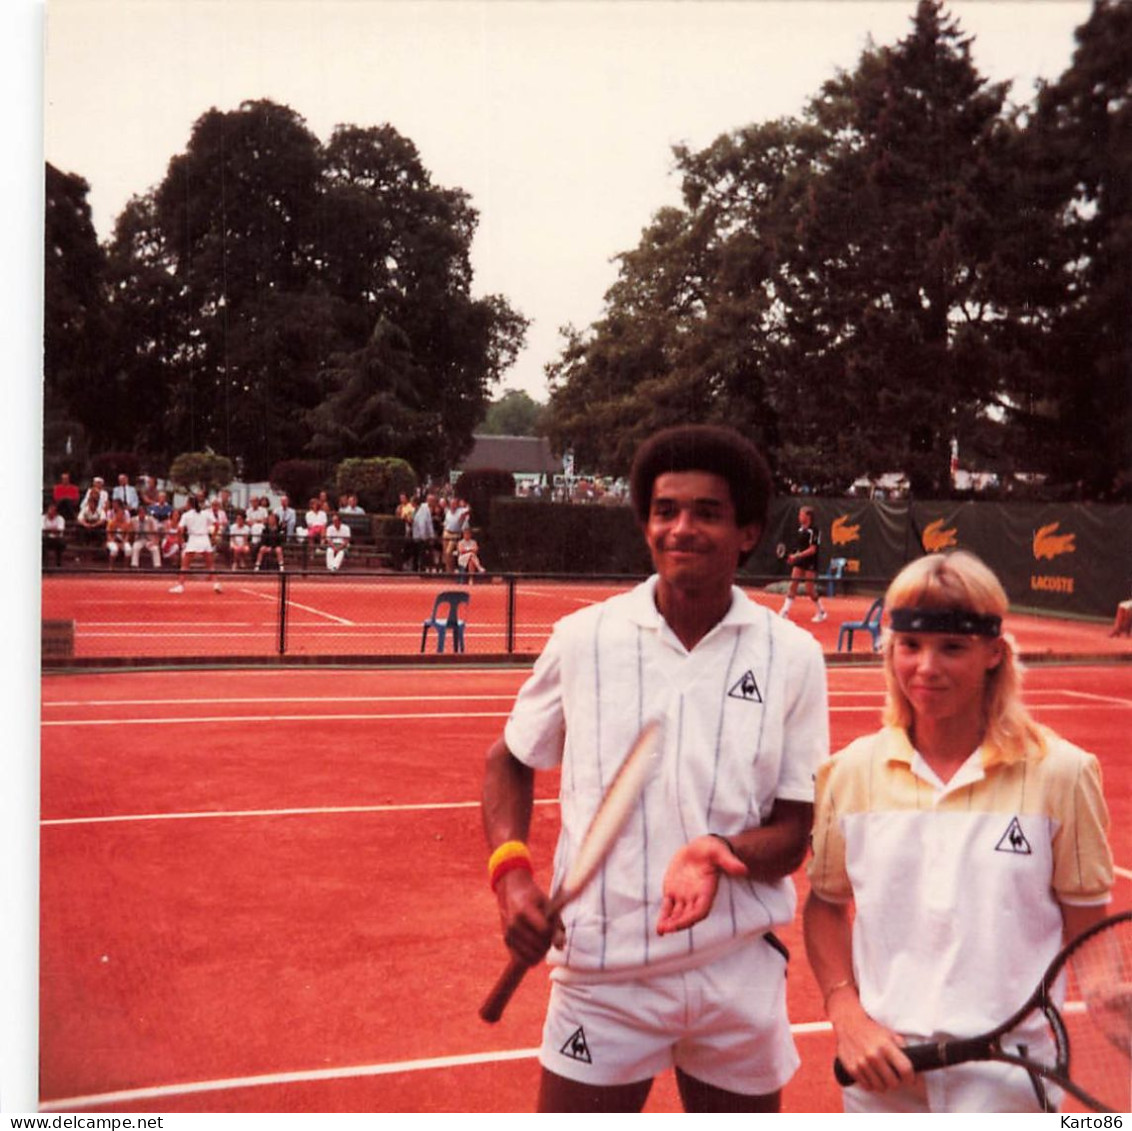 Tennis * Yannick NOAH & Catherine TANVIER Joueur & Joueuse Français * Photo Ancienne Format 10x10cm - Tennis